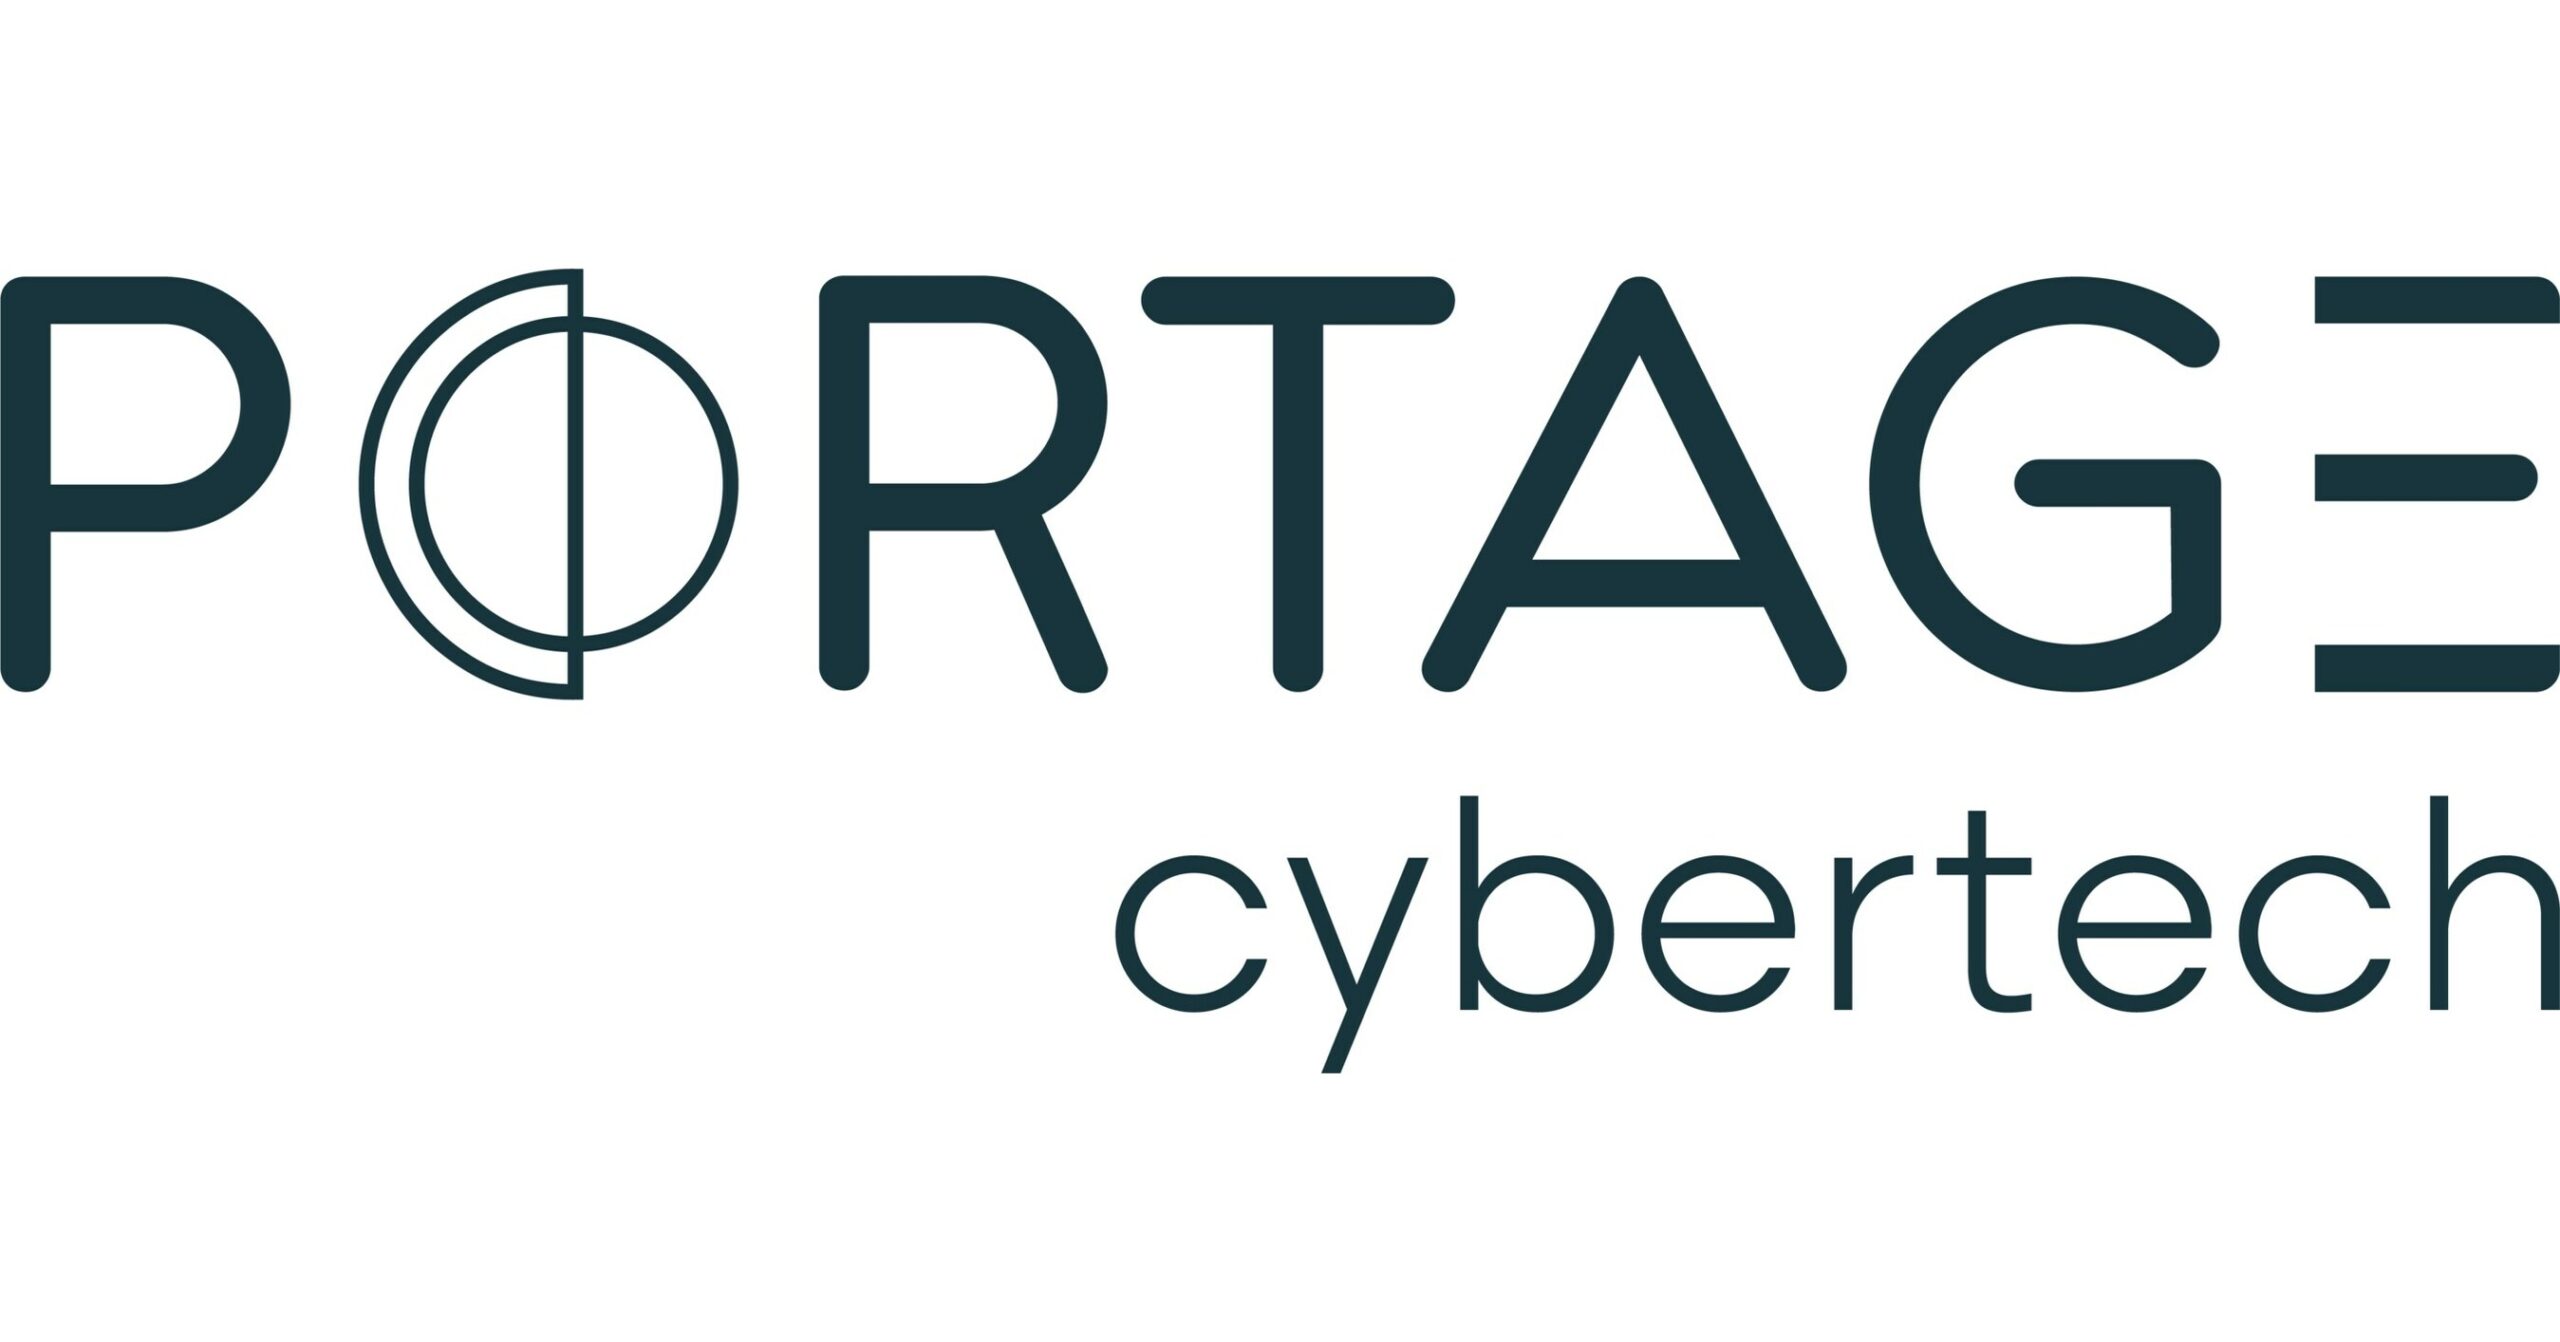 Portage Cybertech